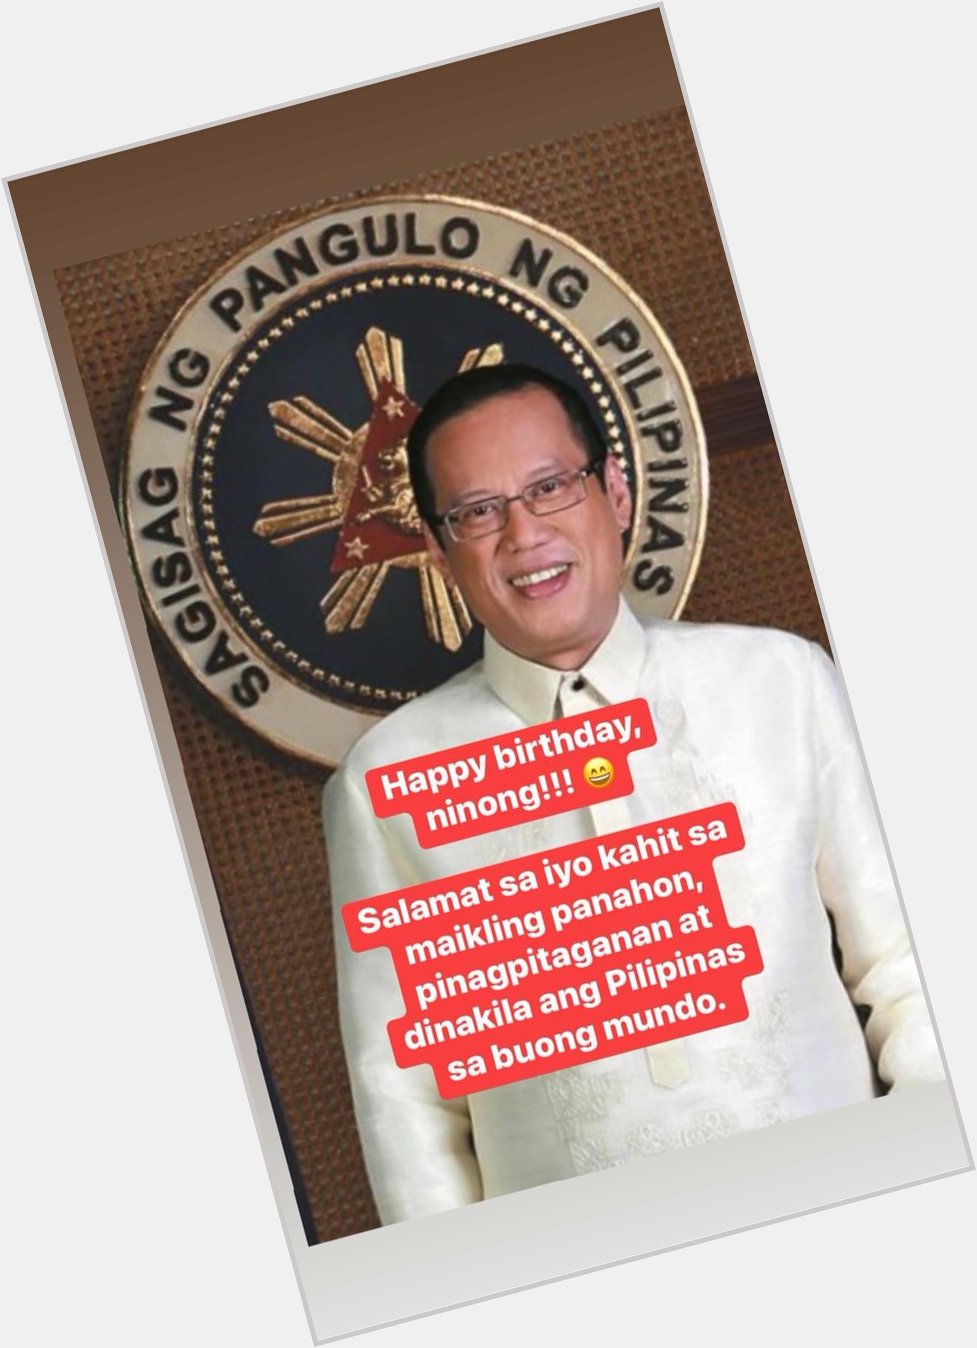 Happy birthday President Noynoy Aquino!!! 